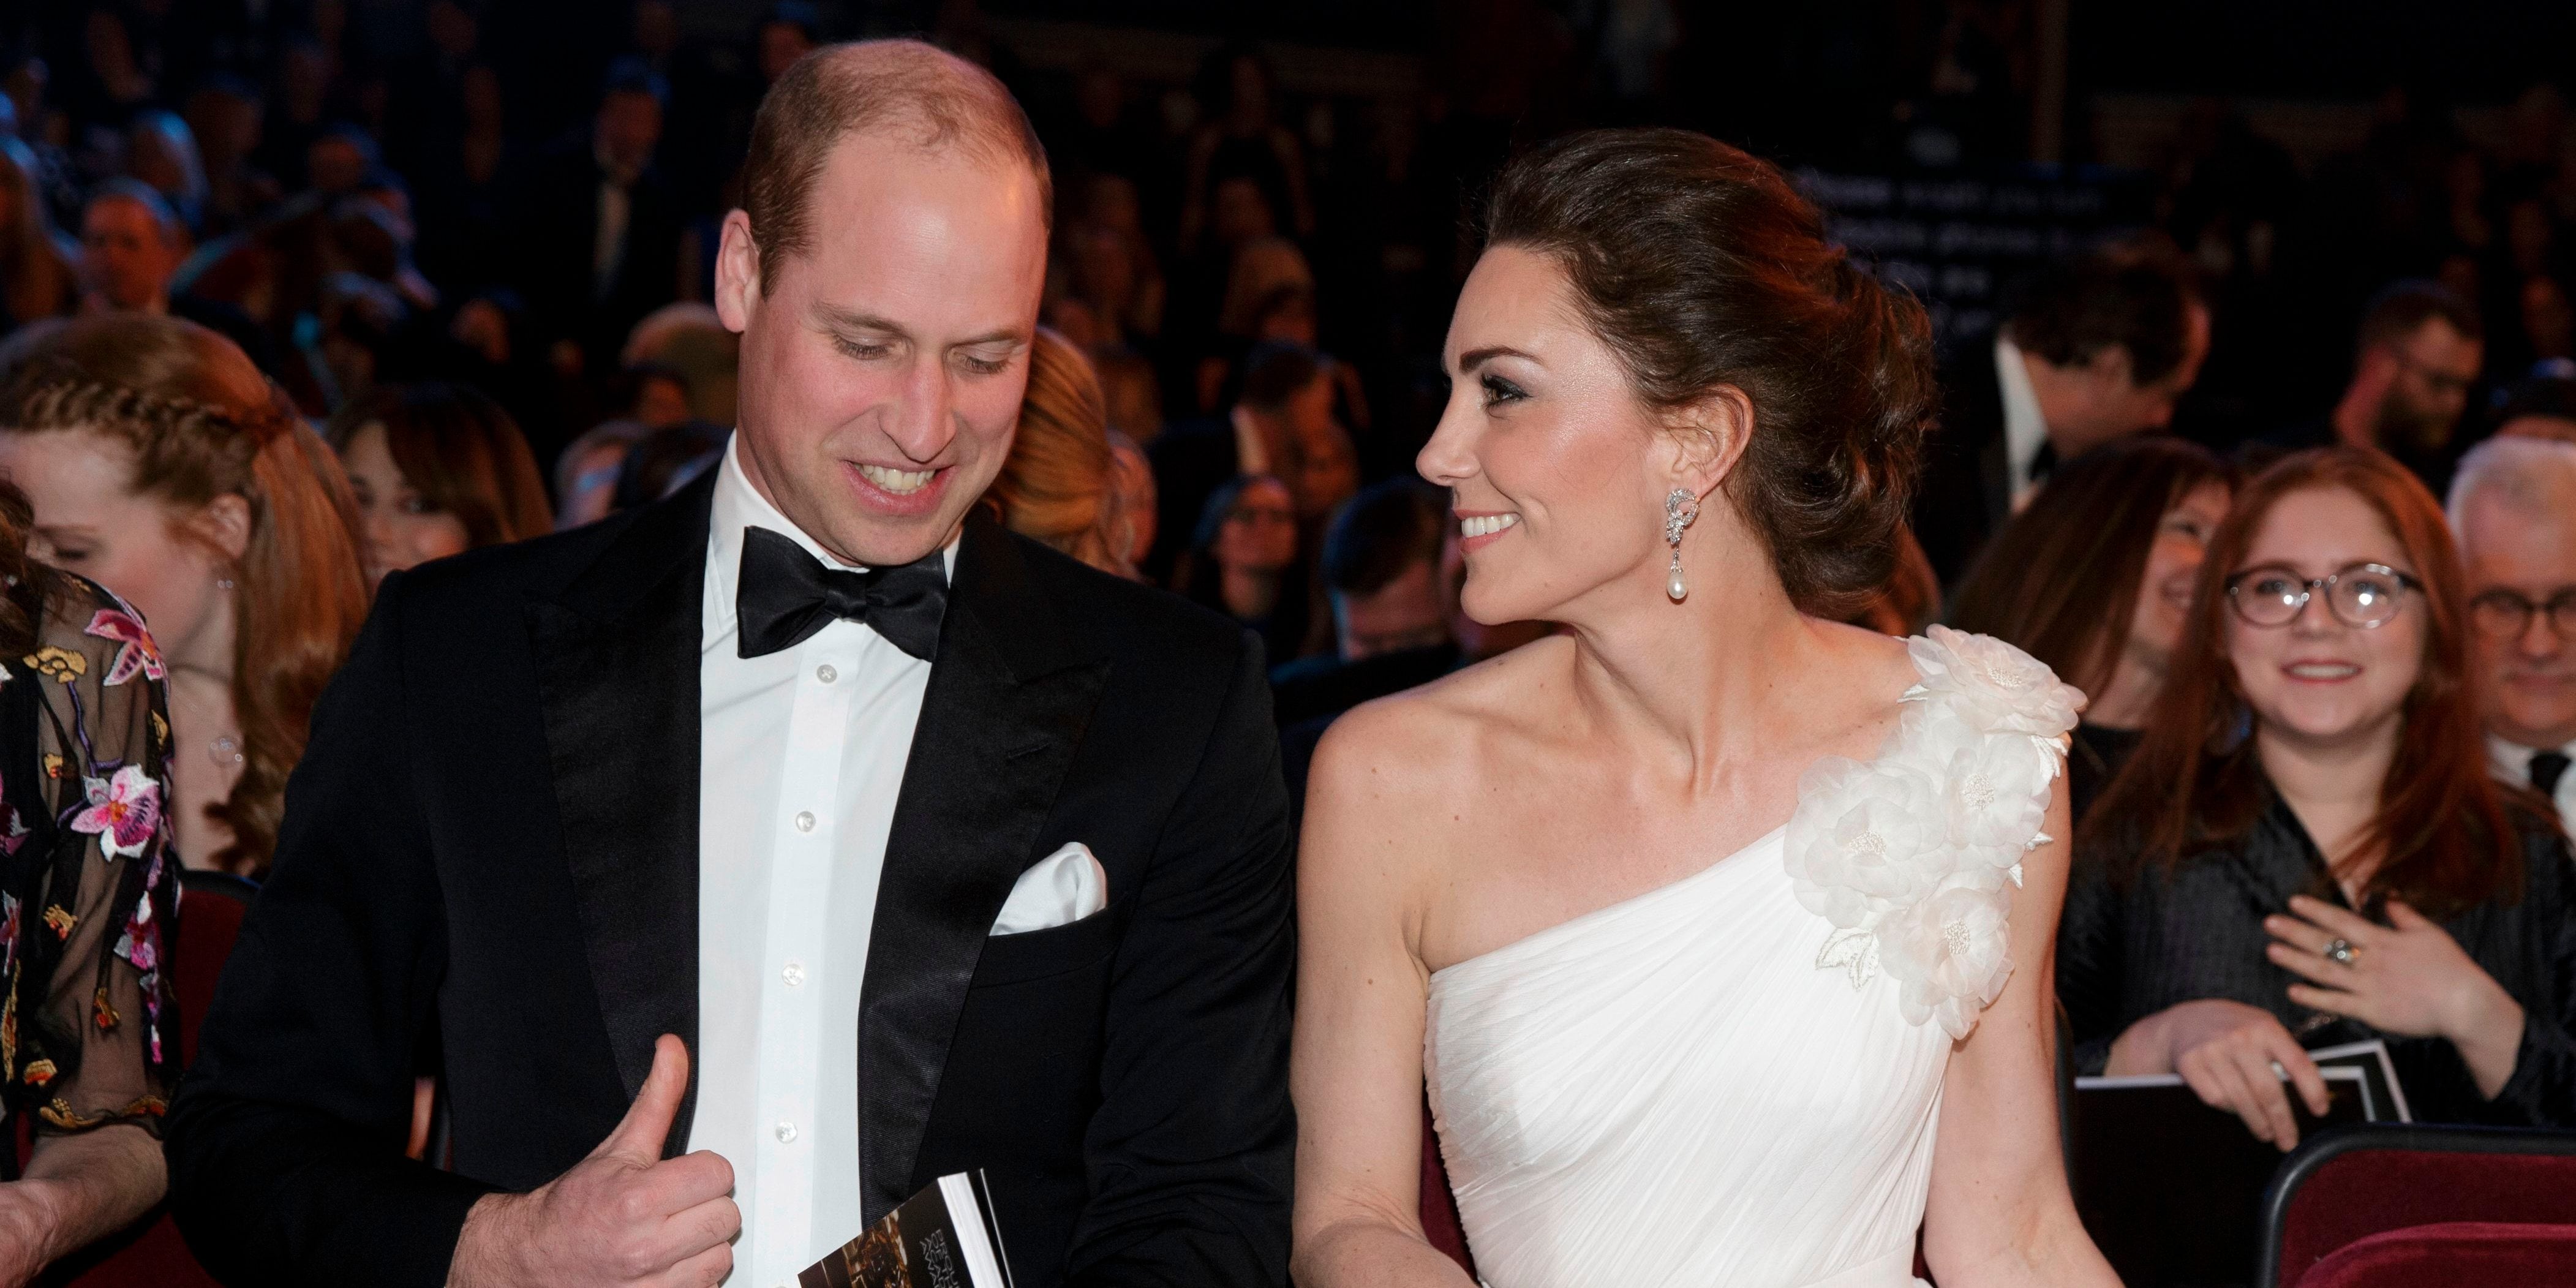 Prince William and Kate Middleton at the BAFTA Awards | POPSUGAR Celebrity